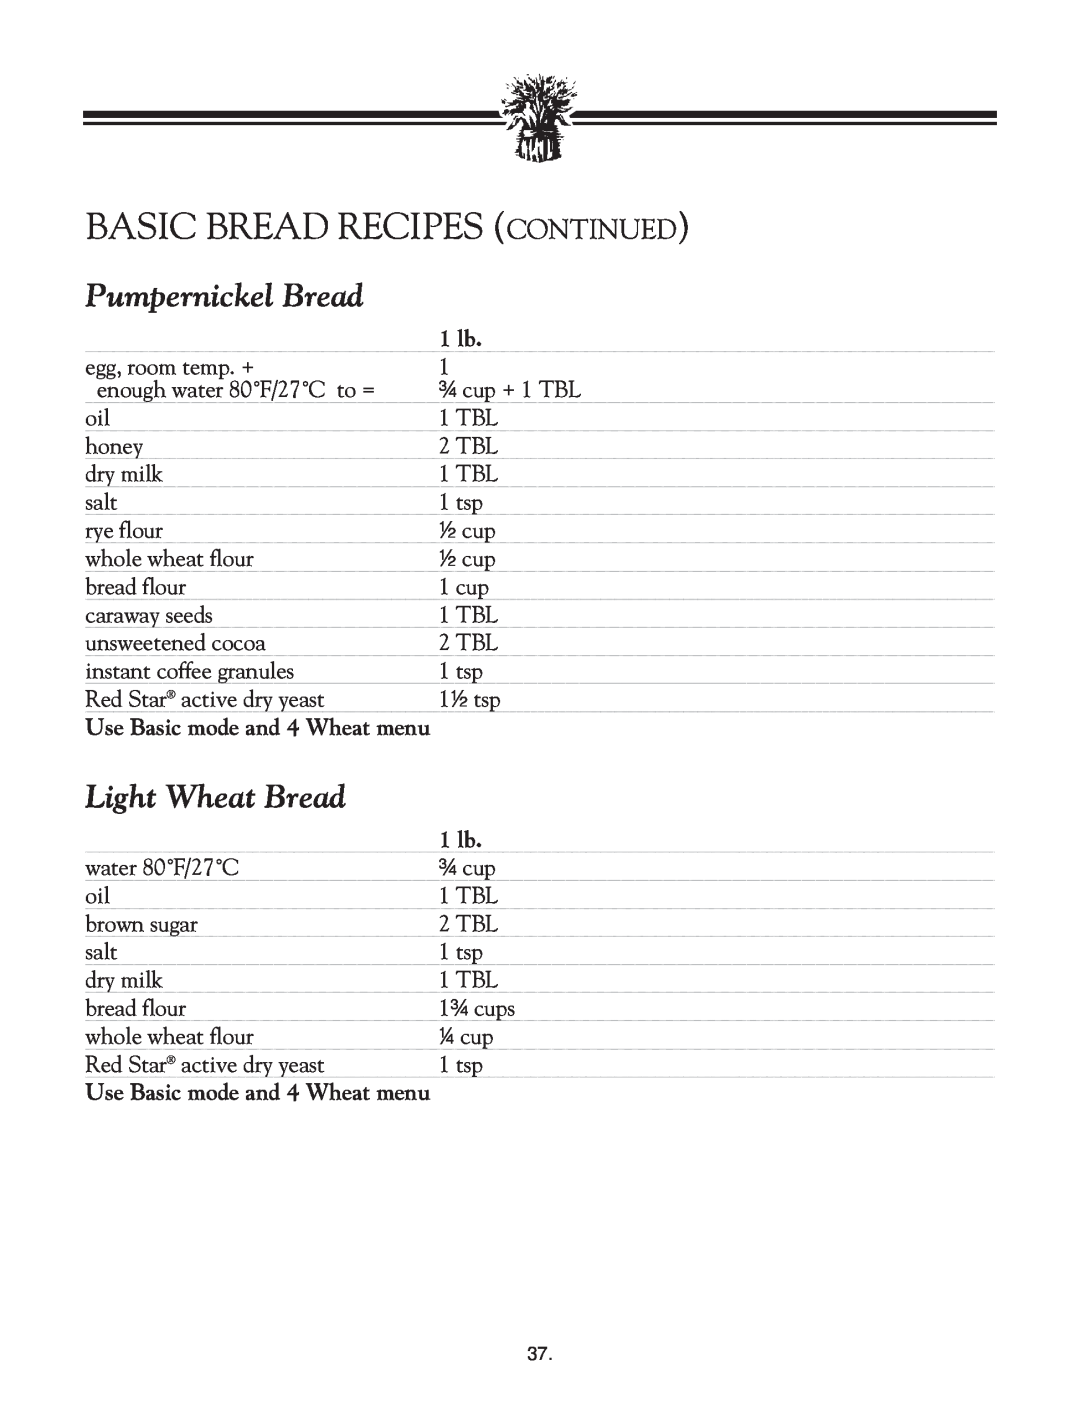 Breadman TR2828G instruction manual Pumpernickel Bread, Light Wheat Bread, Basic Bread Recipes Continued 